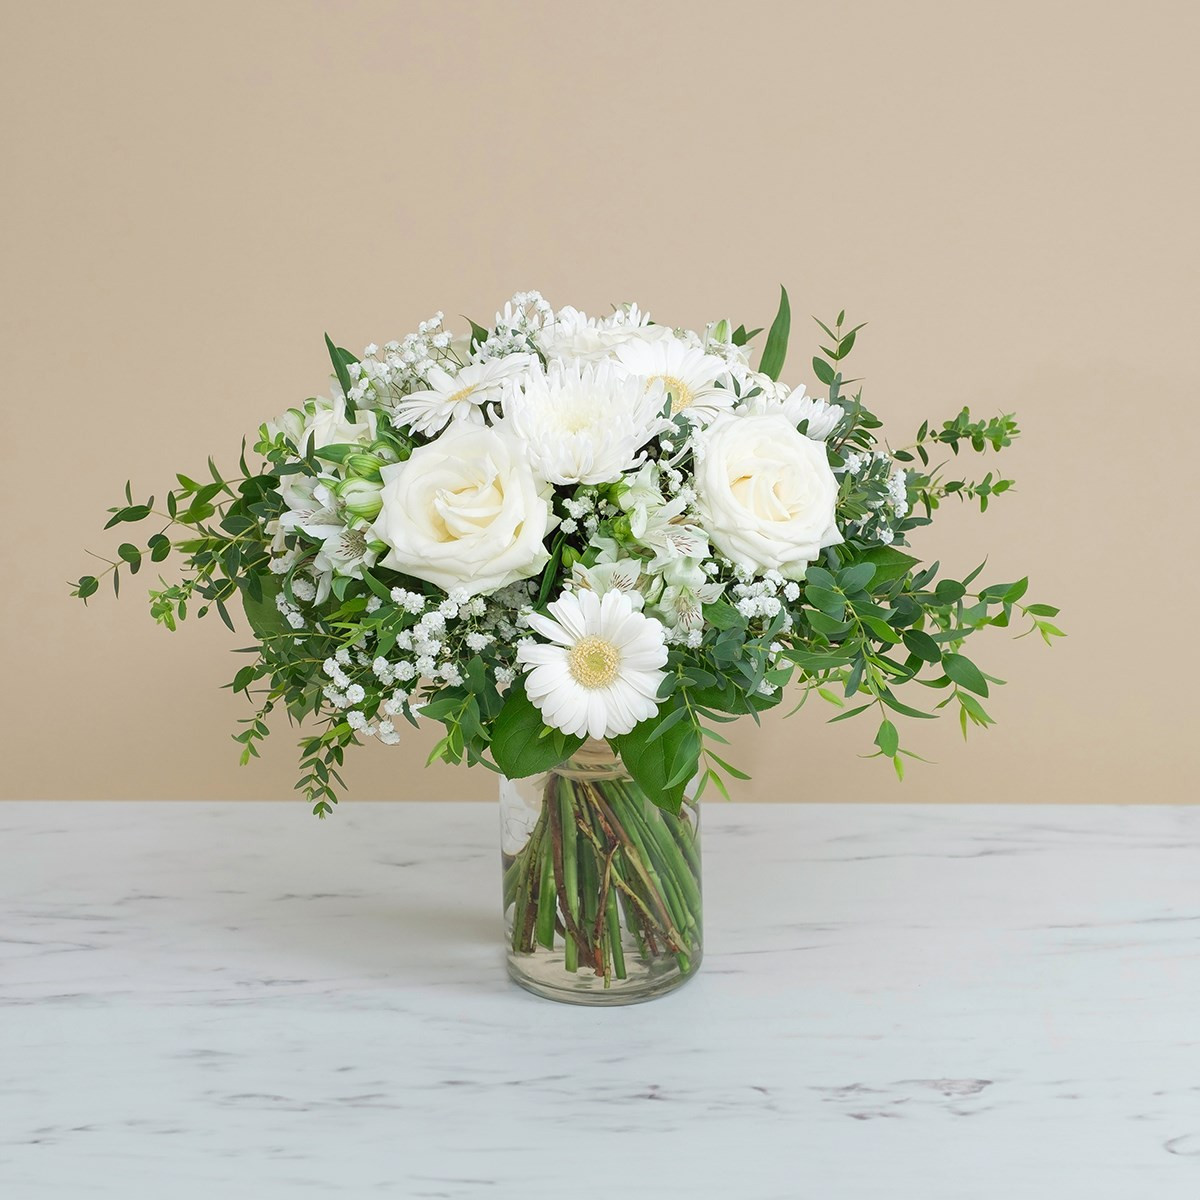 Bukiet kondolencyjny do Włoch z białych róż i gerber z zielenią dekoracyjną